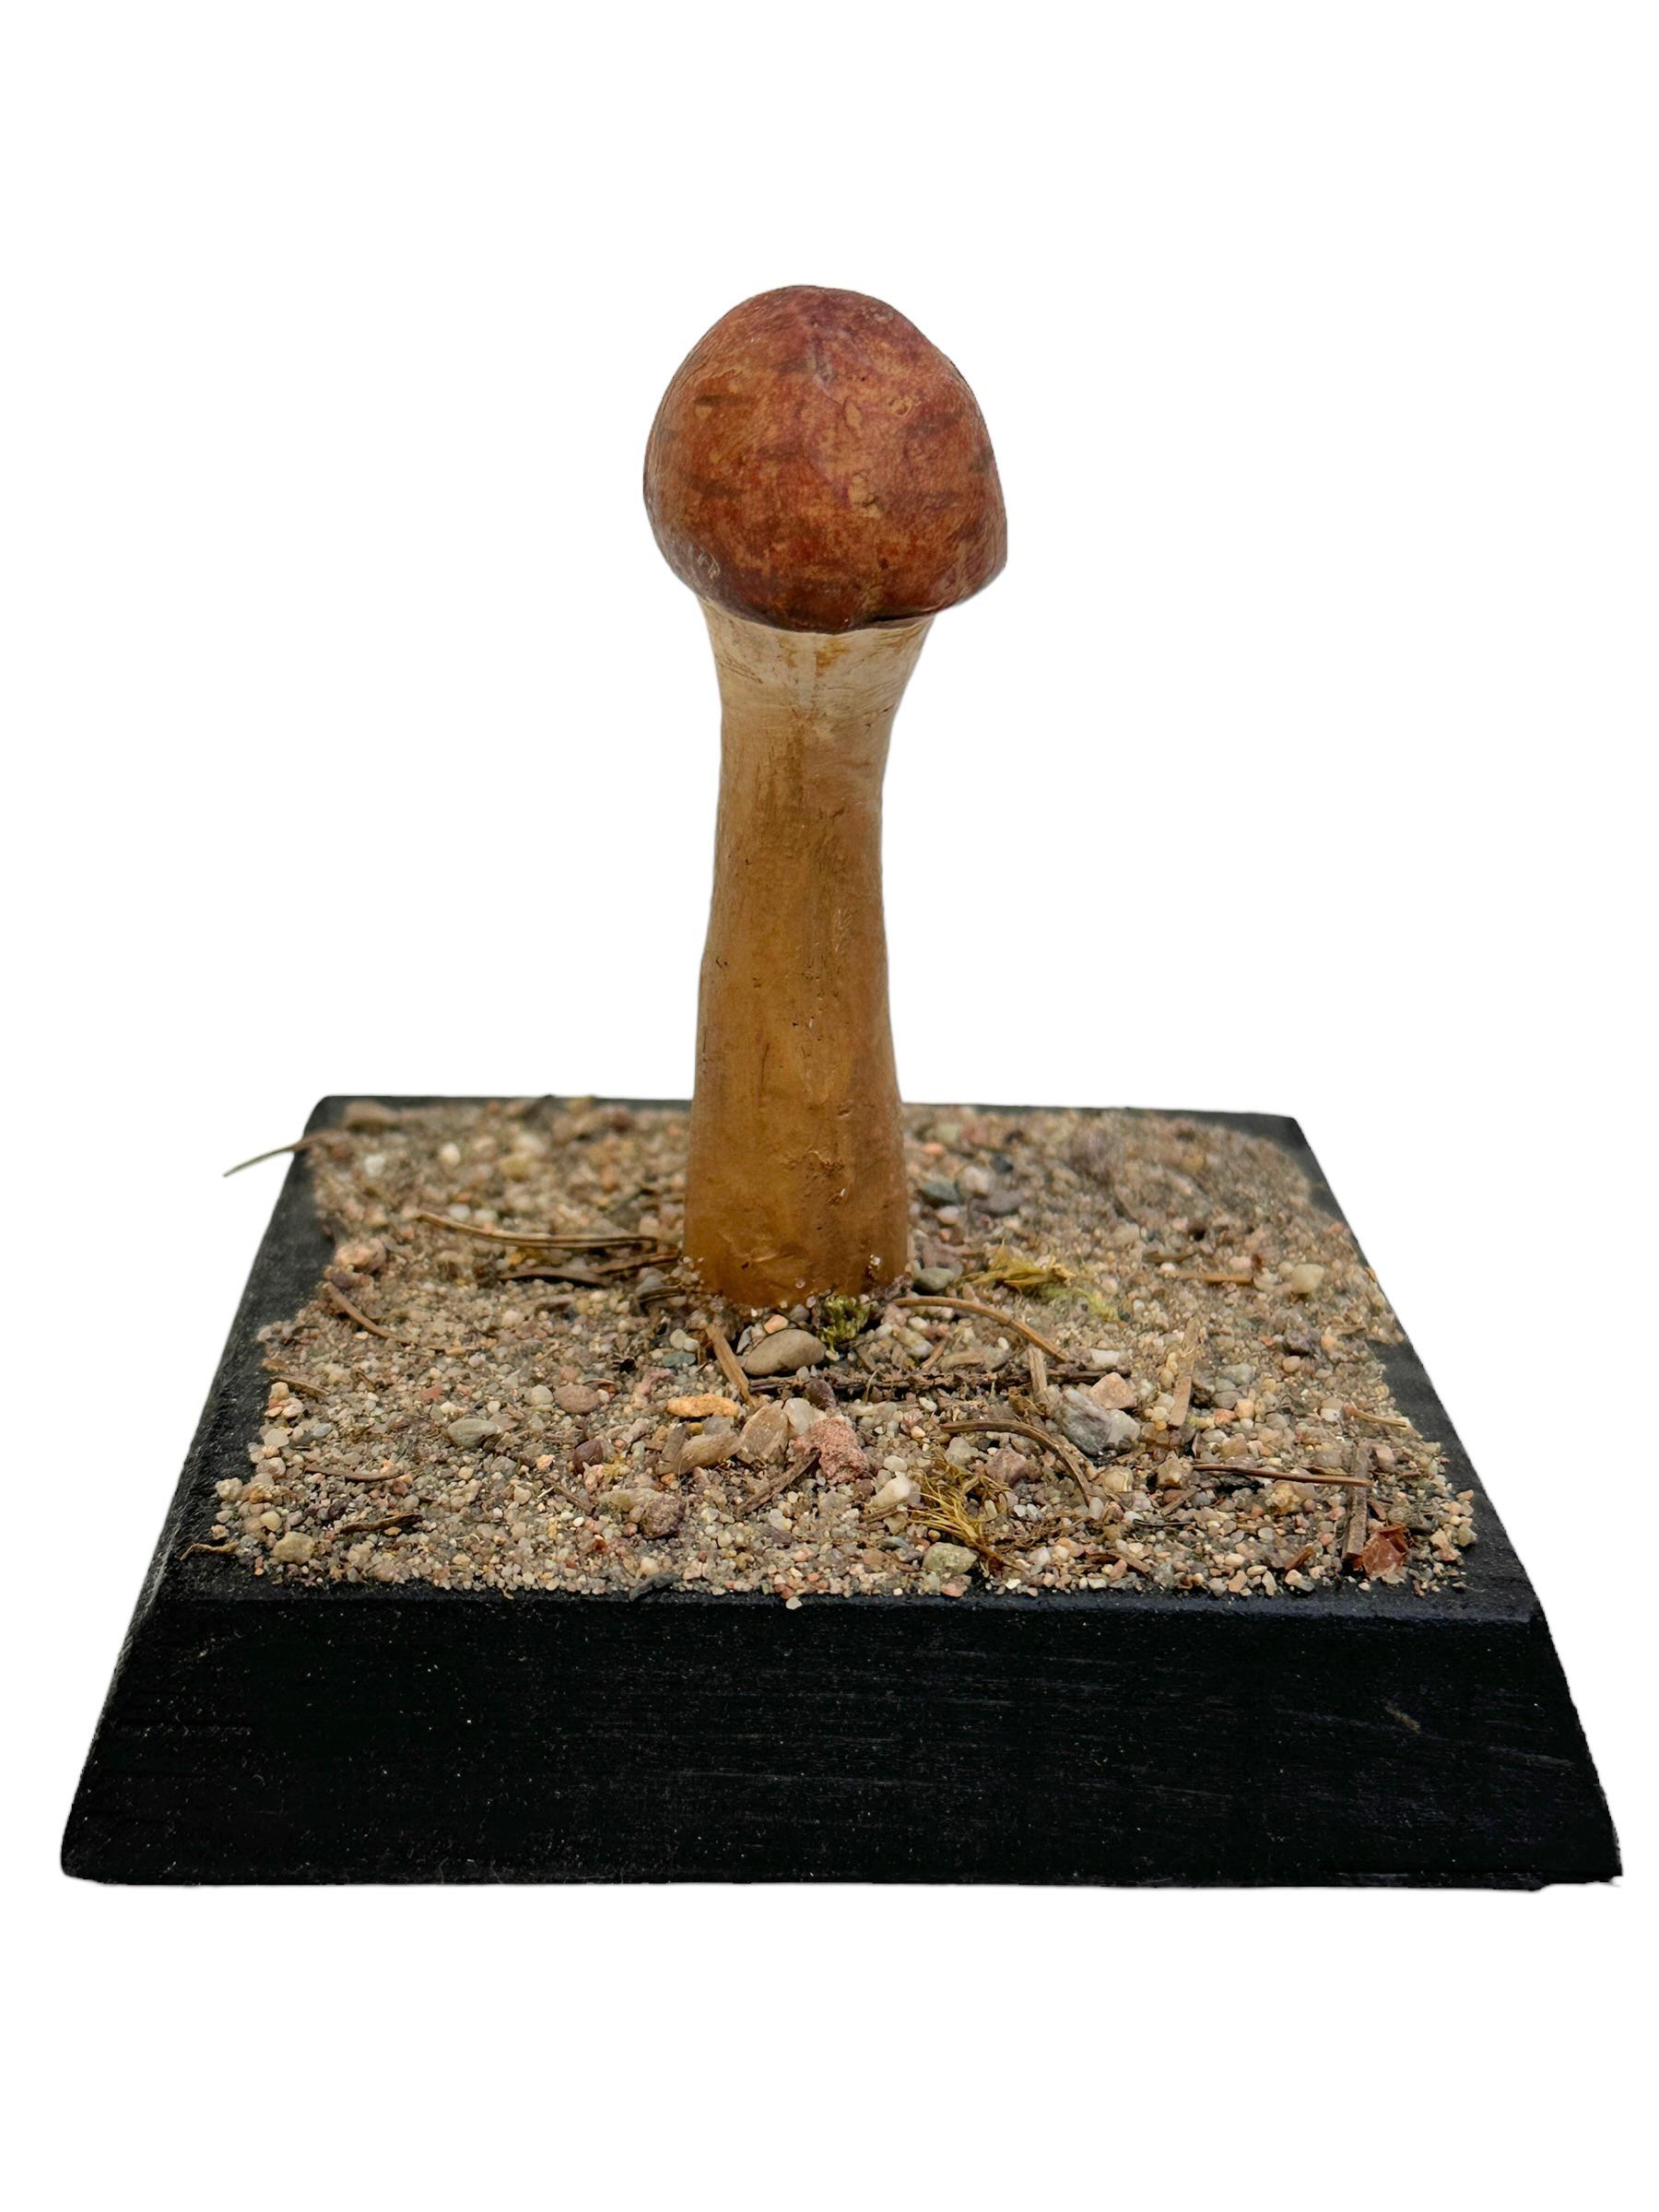 Dieses seltene Vintage-Modell eines botanischen wissenschaftlichen Exemplars stellt einen in Mitteleuropa heimischen Pilz dar. Diese Art von Artikeln wird als Unterrichtsmaterial in deutschen Schulen oder als Ausstellungsstücke in Apotheken